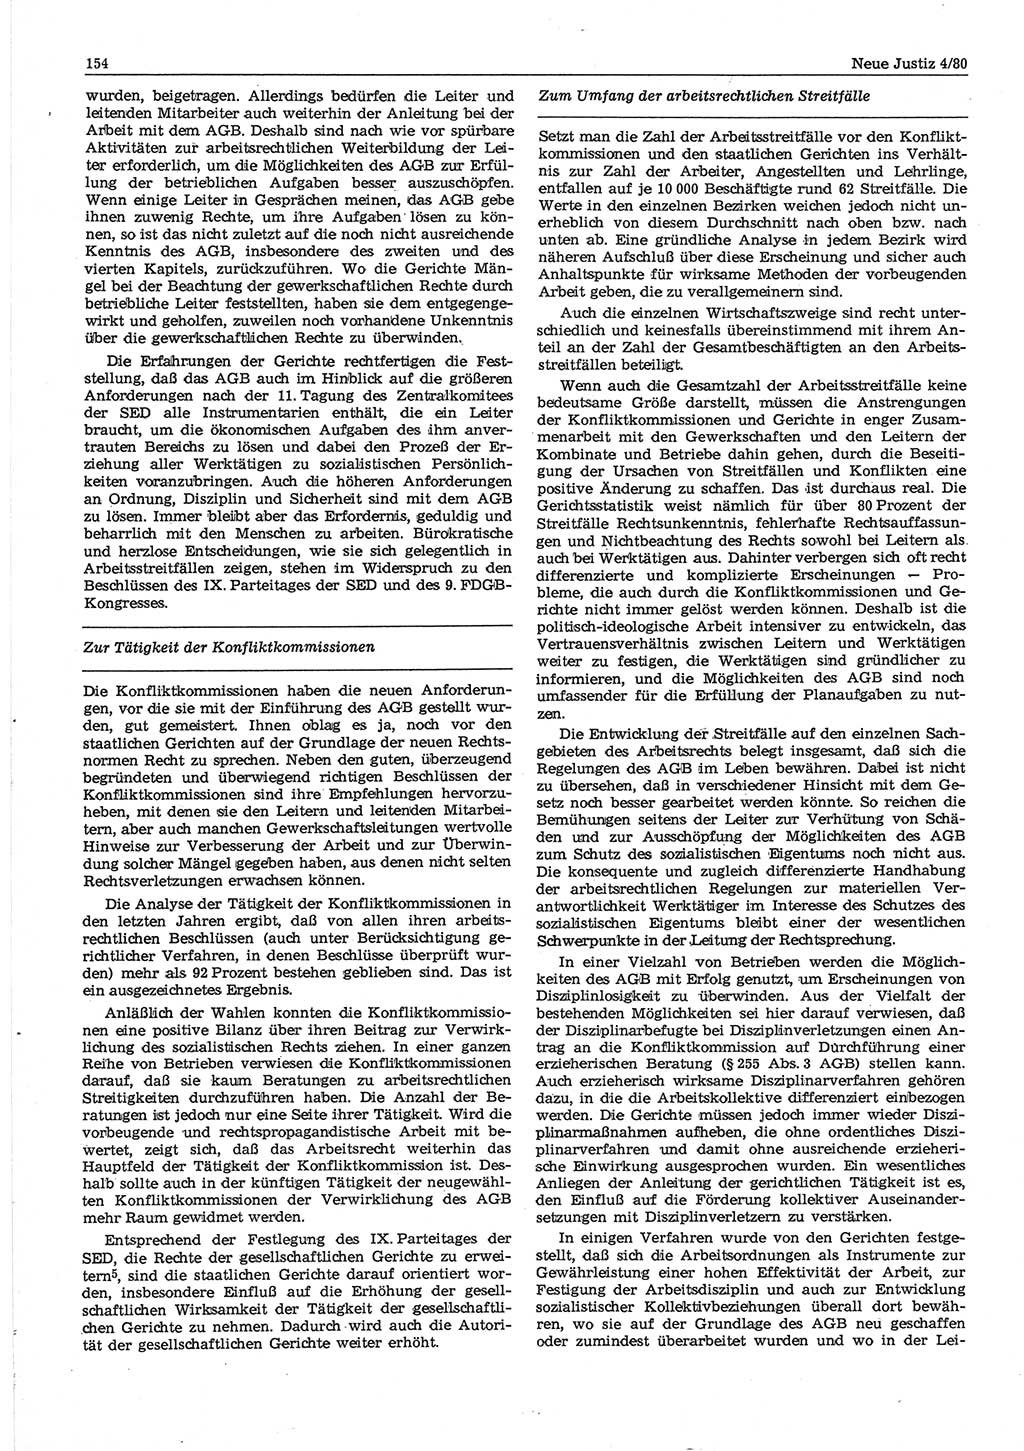 Neue Justiz (NJ), Zeitschrift für sozialistisches Recht und Gesetzlichkeit [Deutsche Demokratische Republik (DDR)], 34. Jahrgang 1980, Seite 154 (NJ DDR 1980, S. 154)